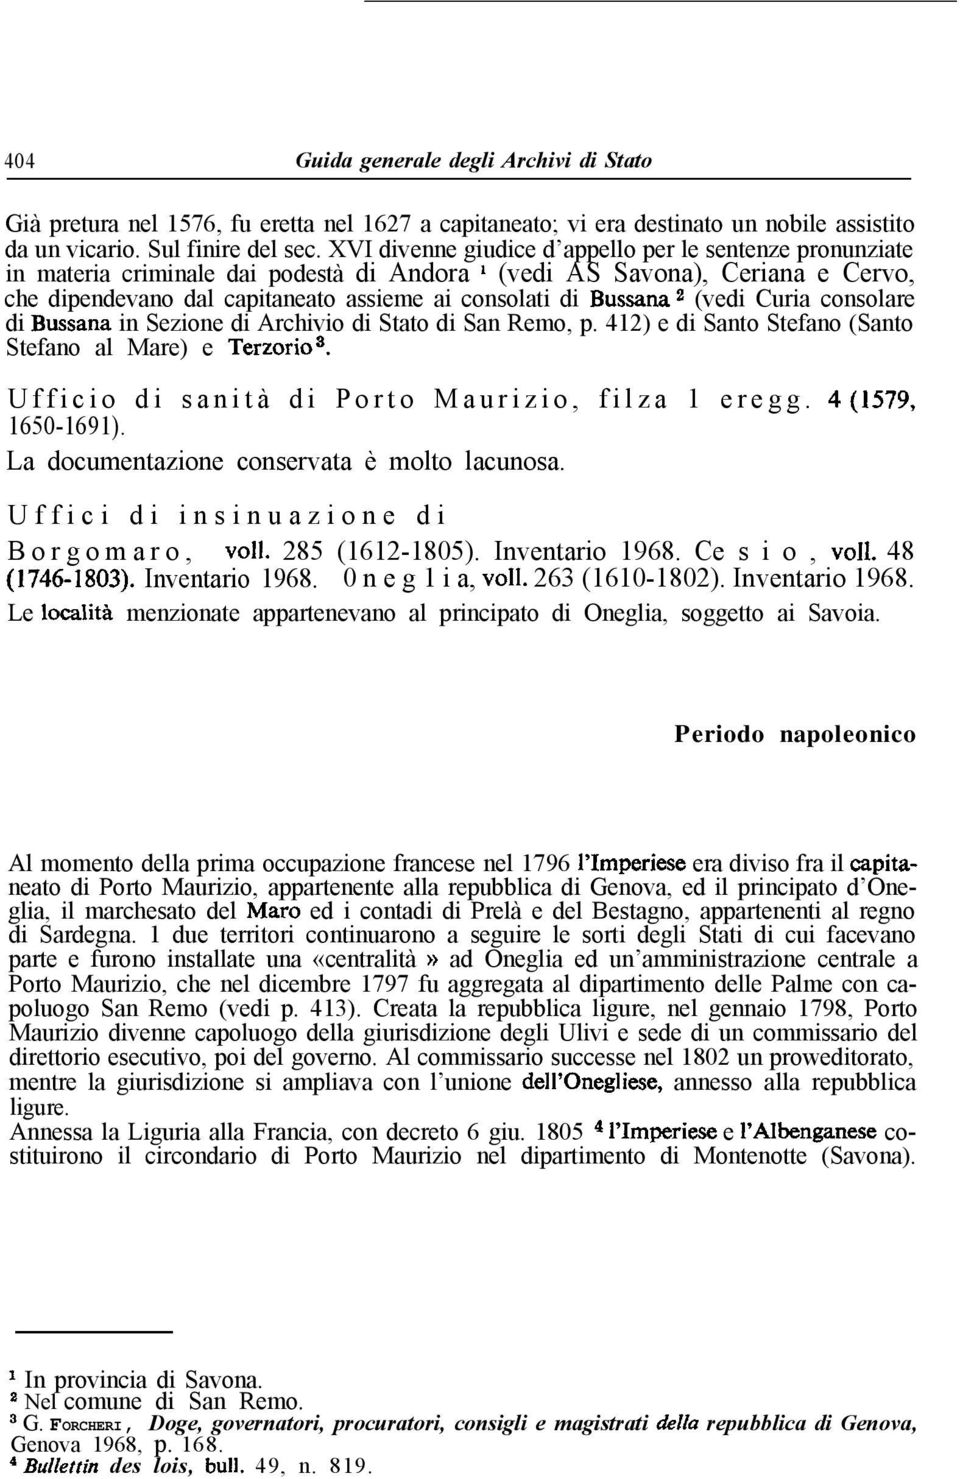 Bussana 2 (vedi Curia consolare di Bussana in Sezione di Archivio di Stato di San Remo, p. 412) e di Santo Stefano (Santo Stefano al Mare) e Terzorio3.